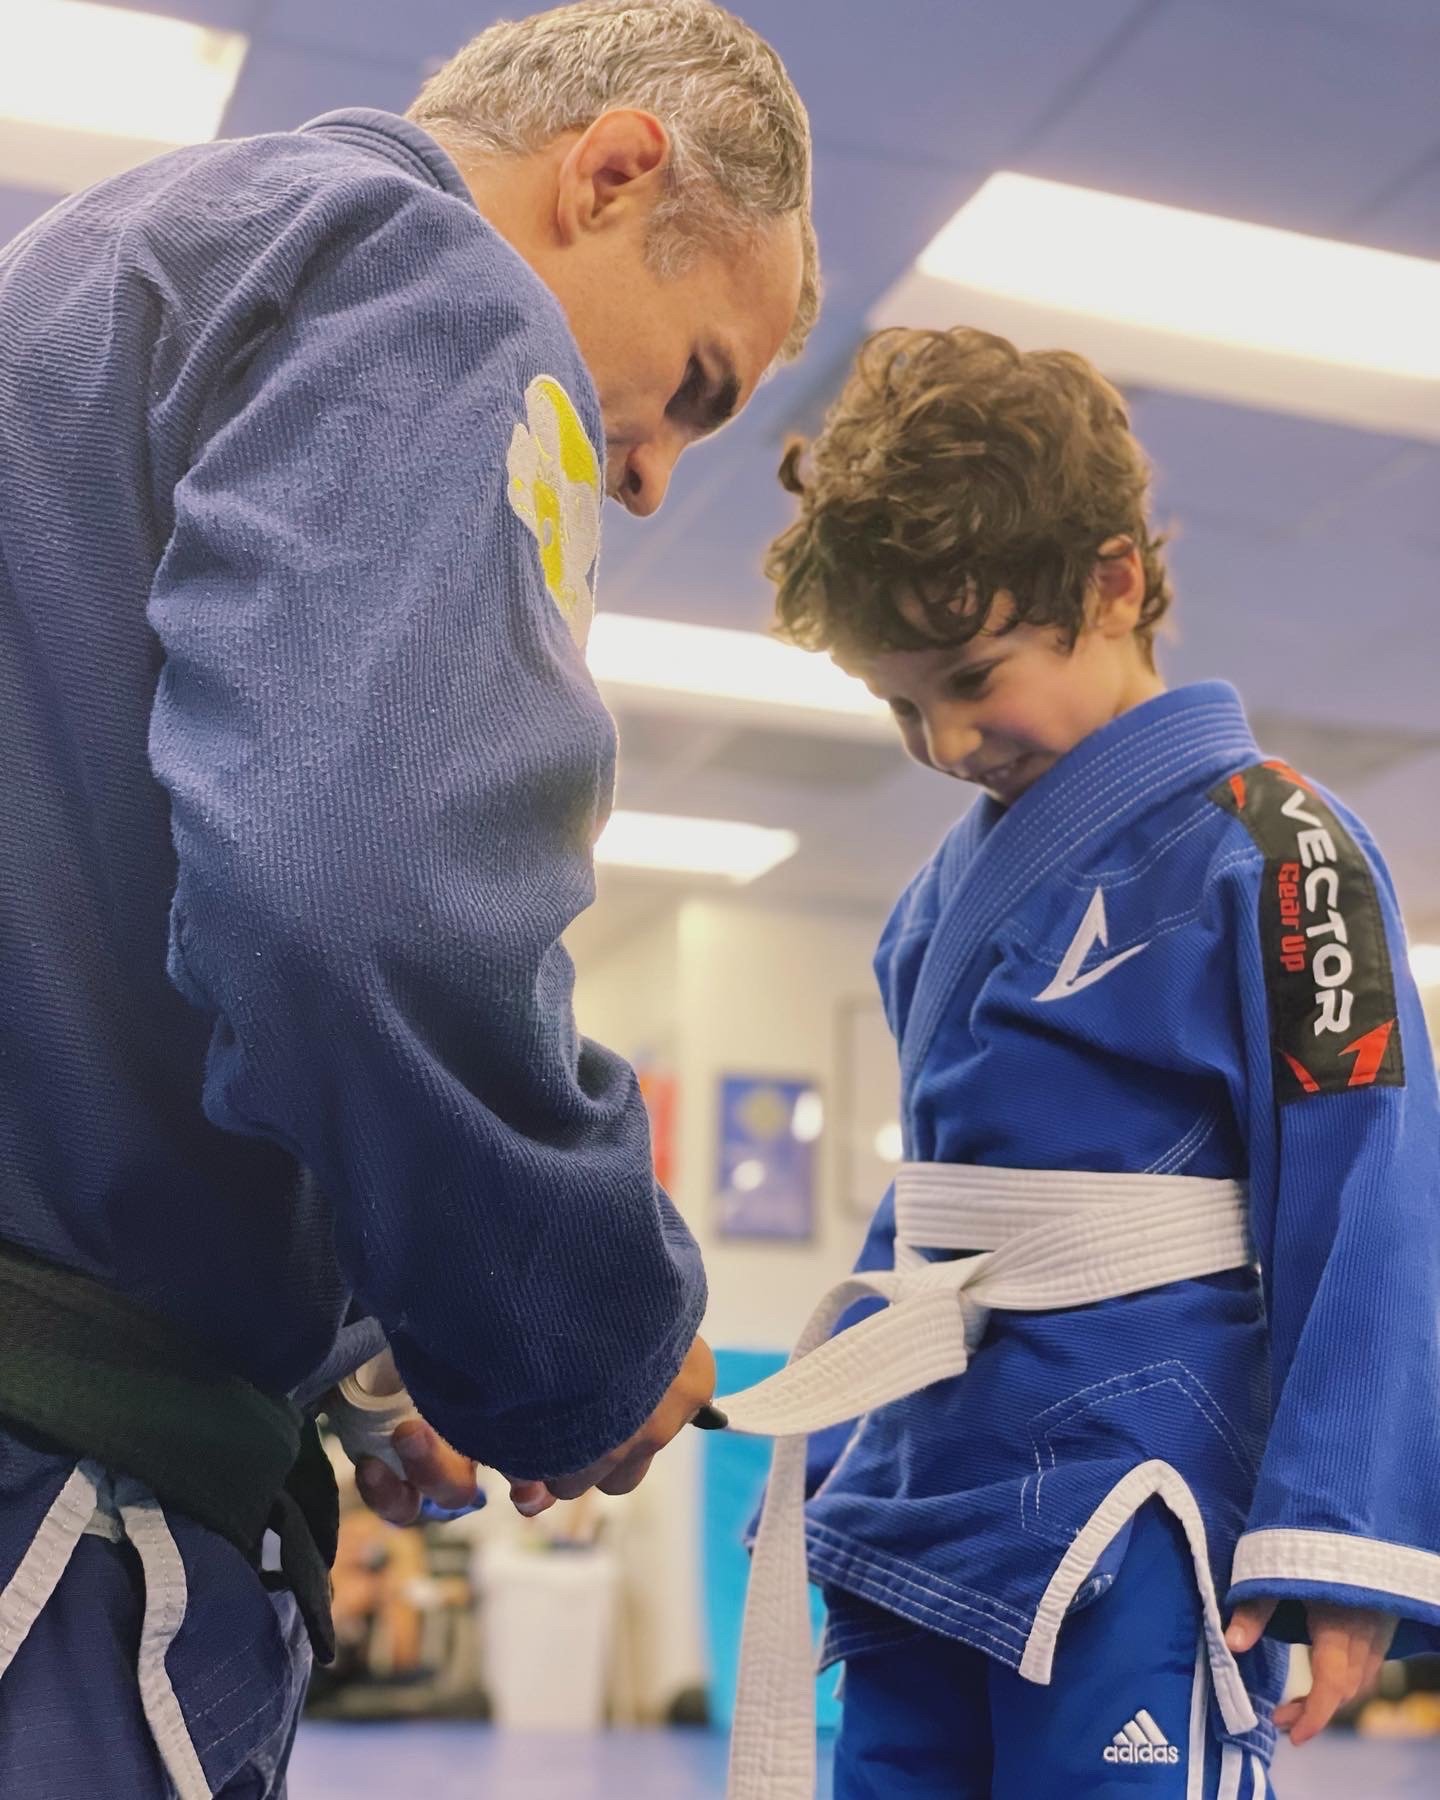 Kids BJJ and judo in Arlington VA